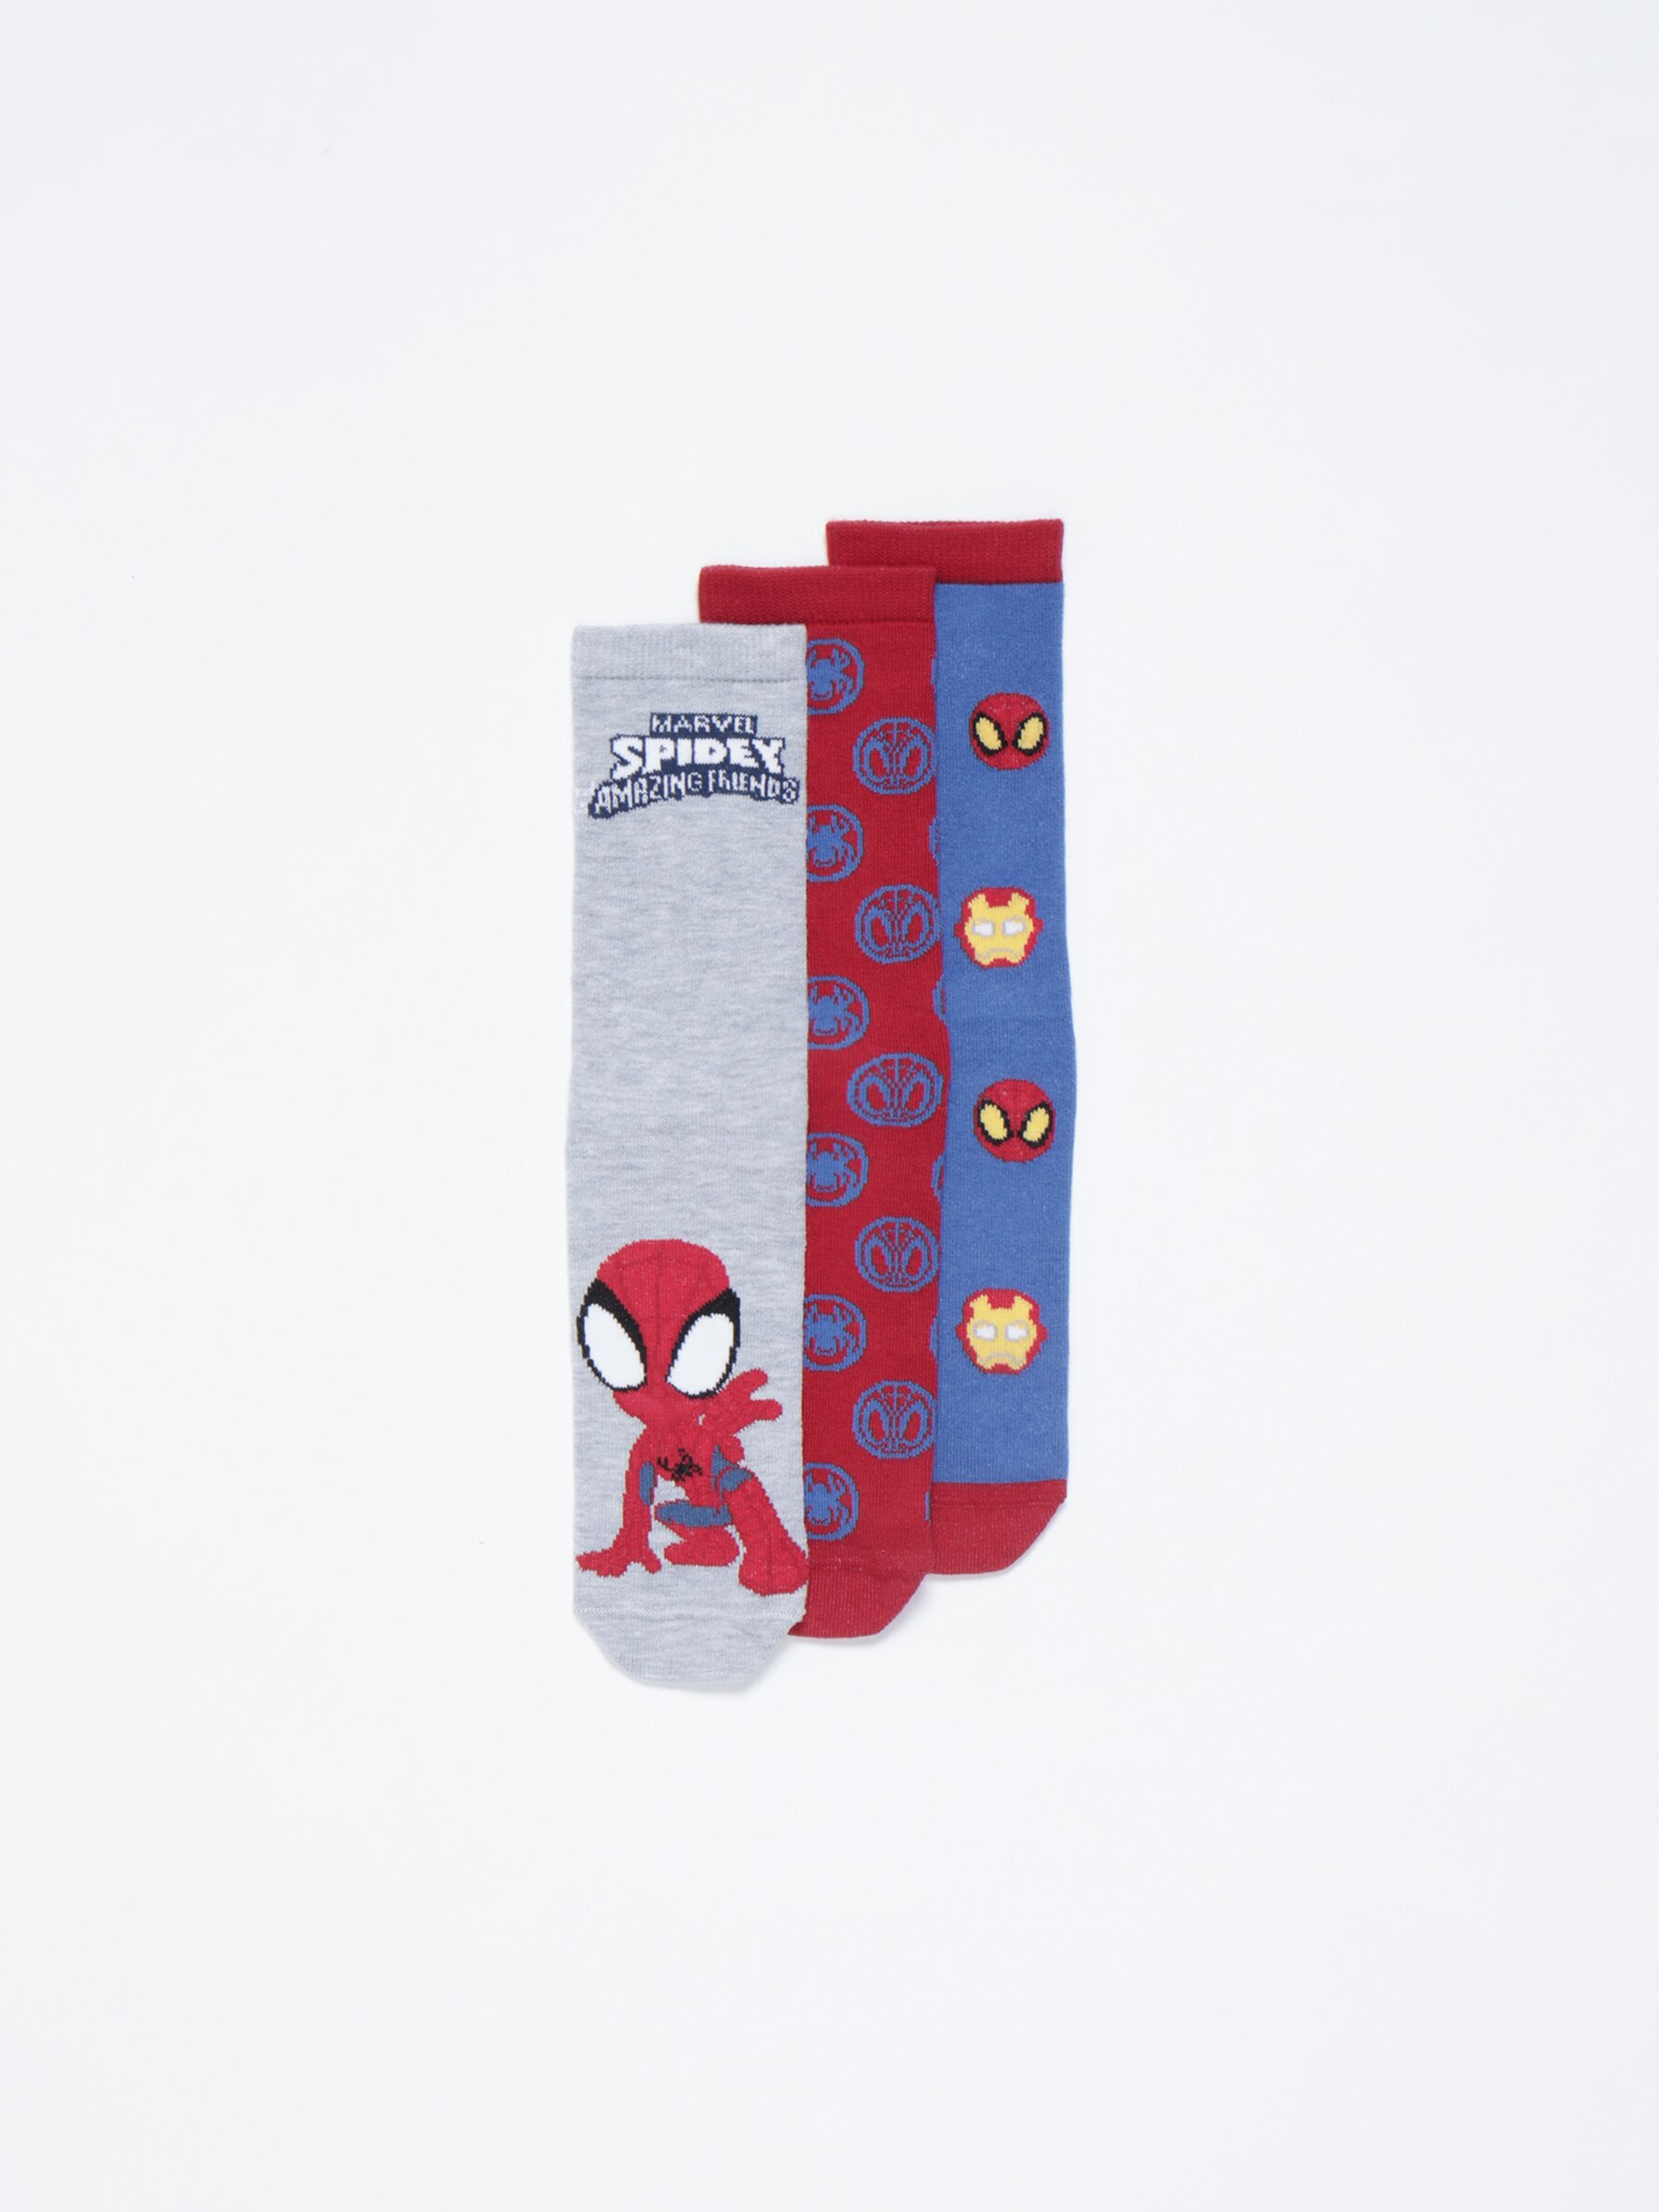 3-pack of Spider-Man ©Marvel socks - Long socks - Socks